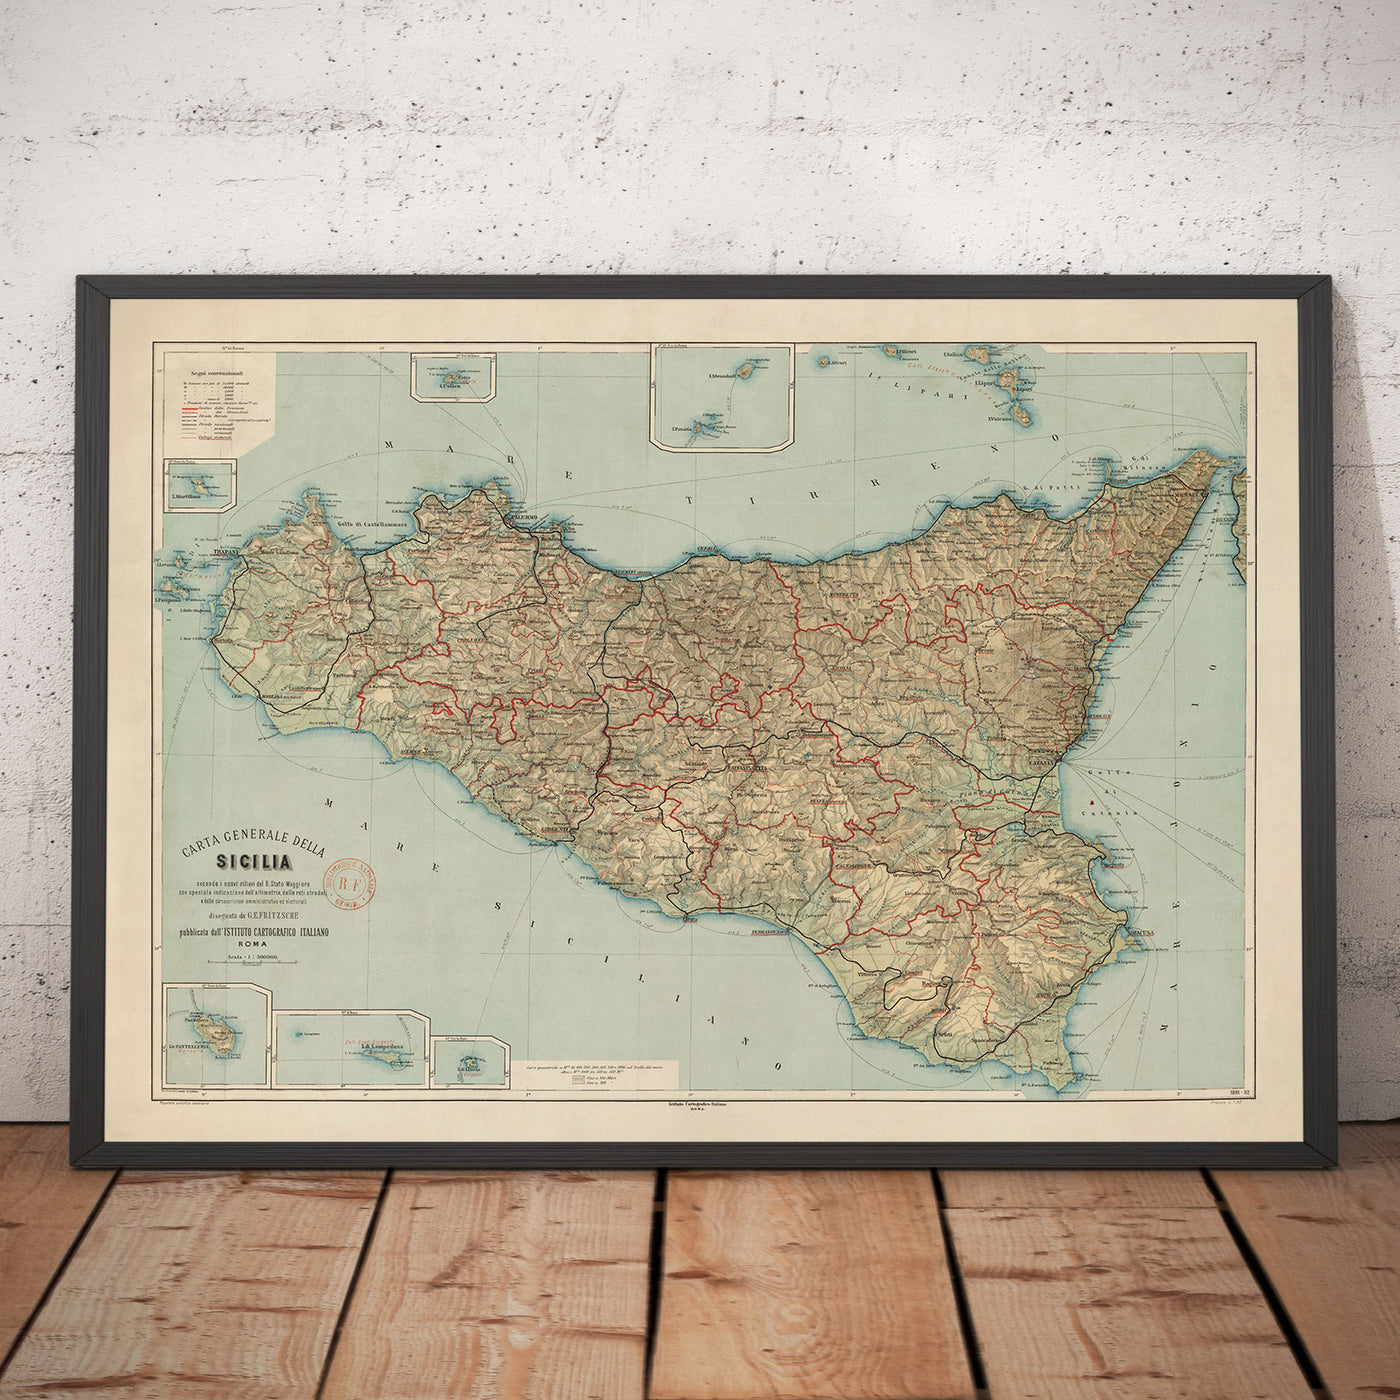 Alte Karte von Sizilien im Jahr 1891 von Wilhelm Fritzsche - Palermo, Catania, Messina, Marsala, Sciacca